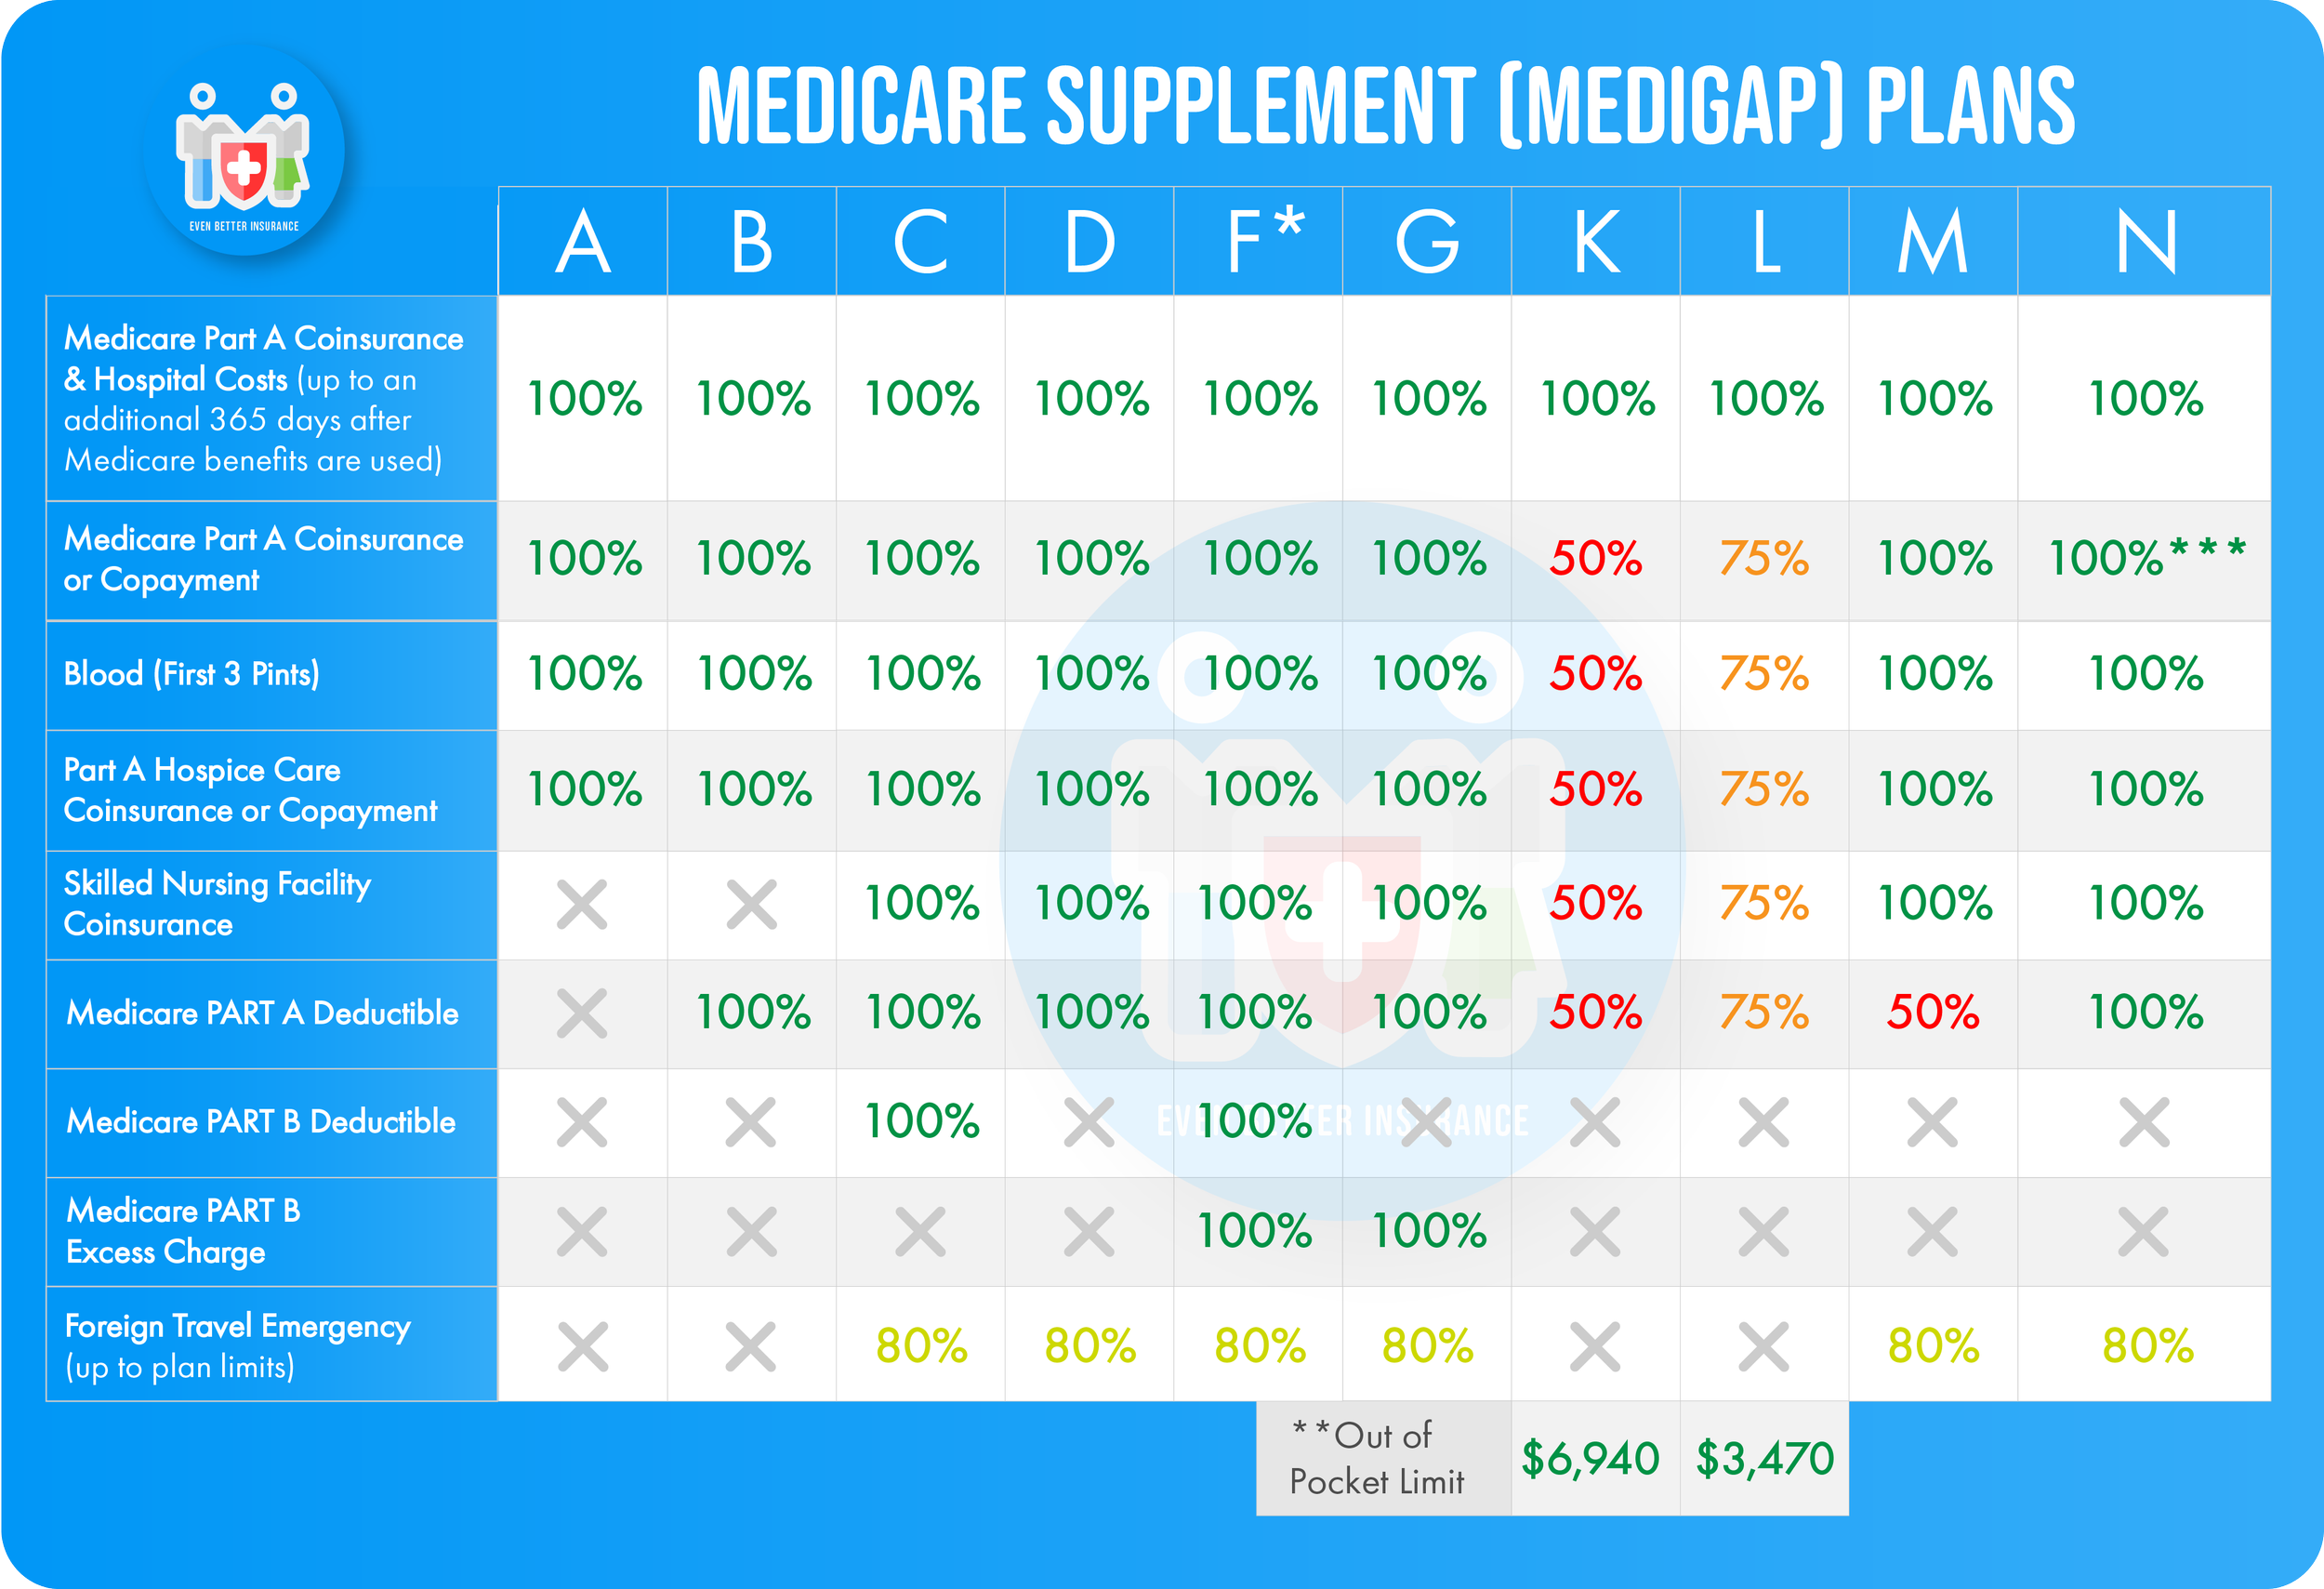 Medicare Supplement Plans — Even Better Insurance